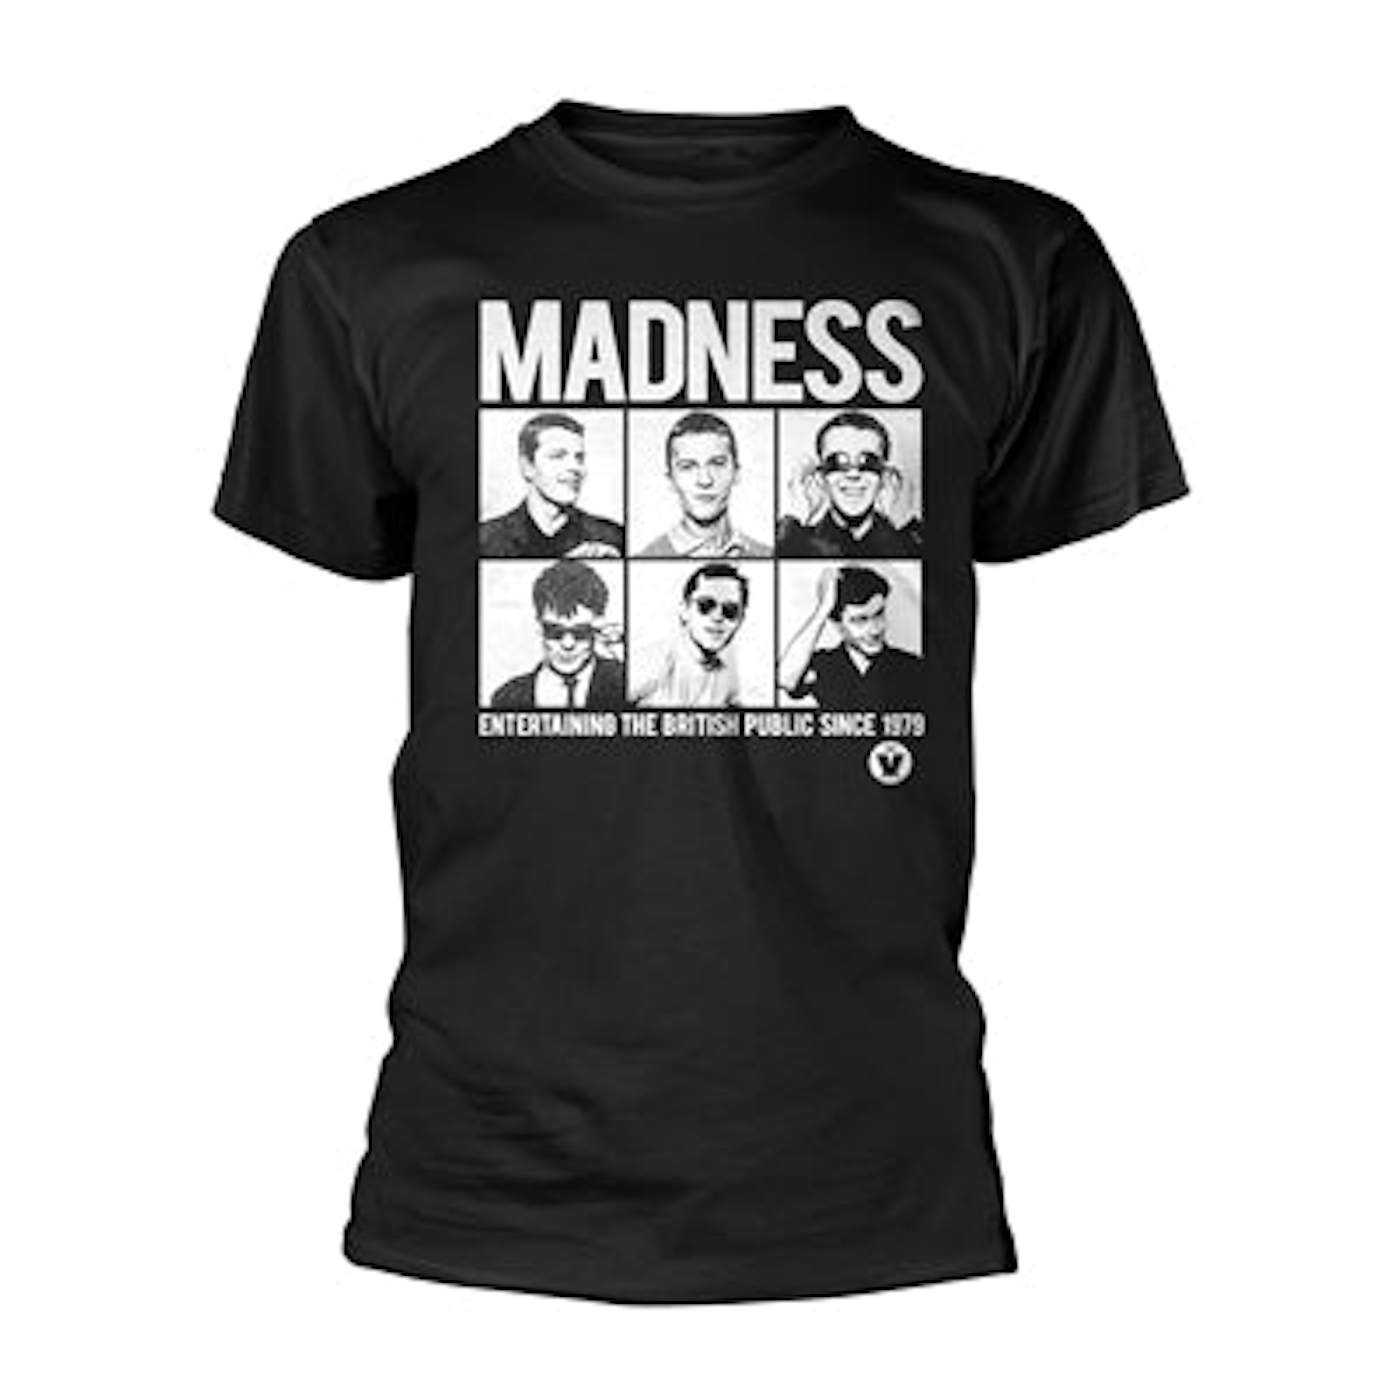 Madness T-Shirt - Since 1979